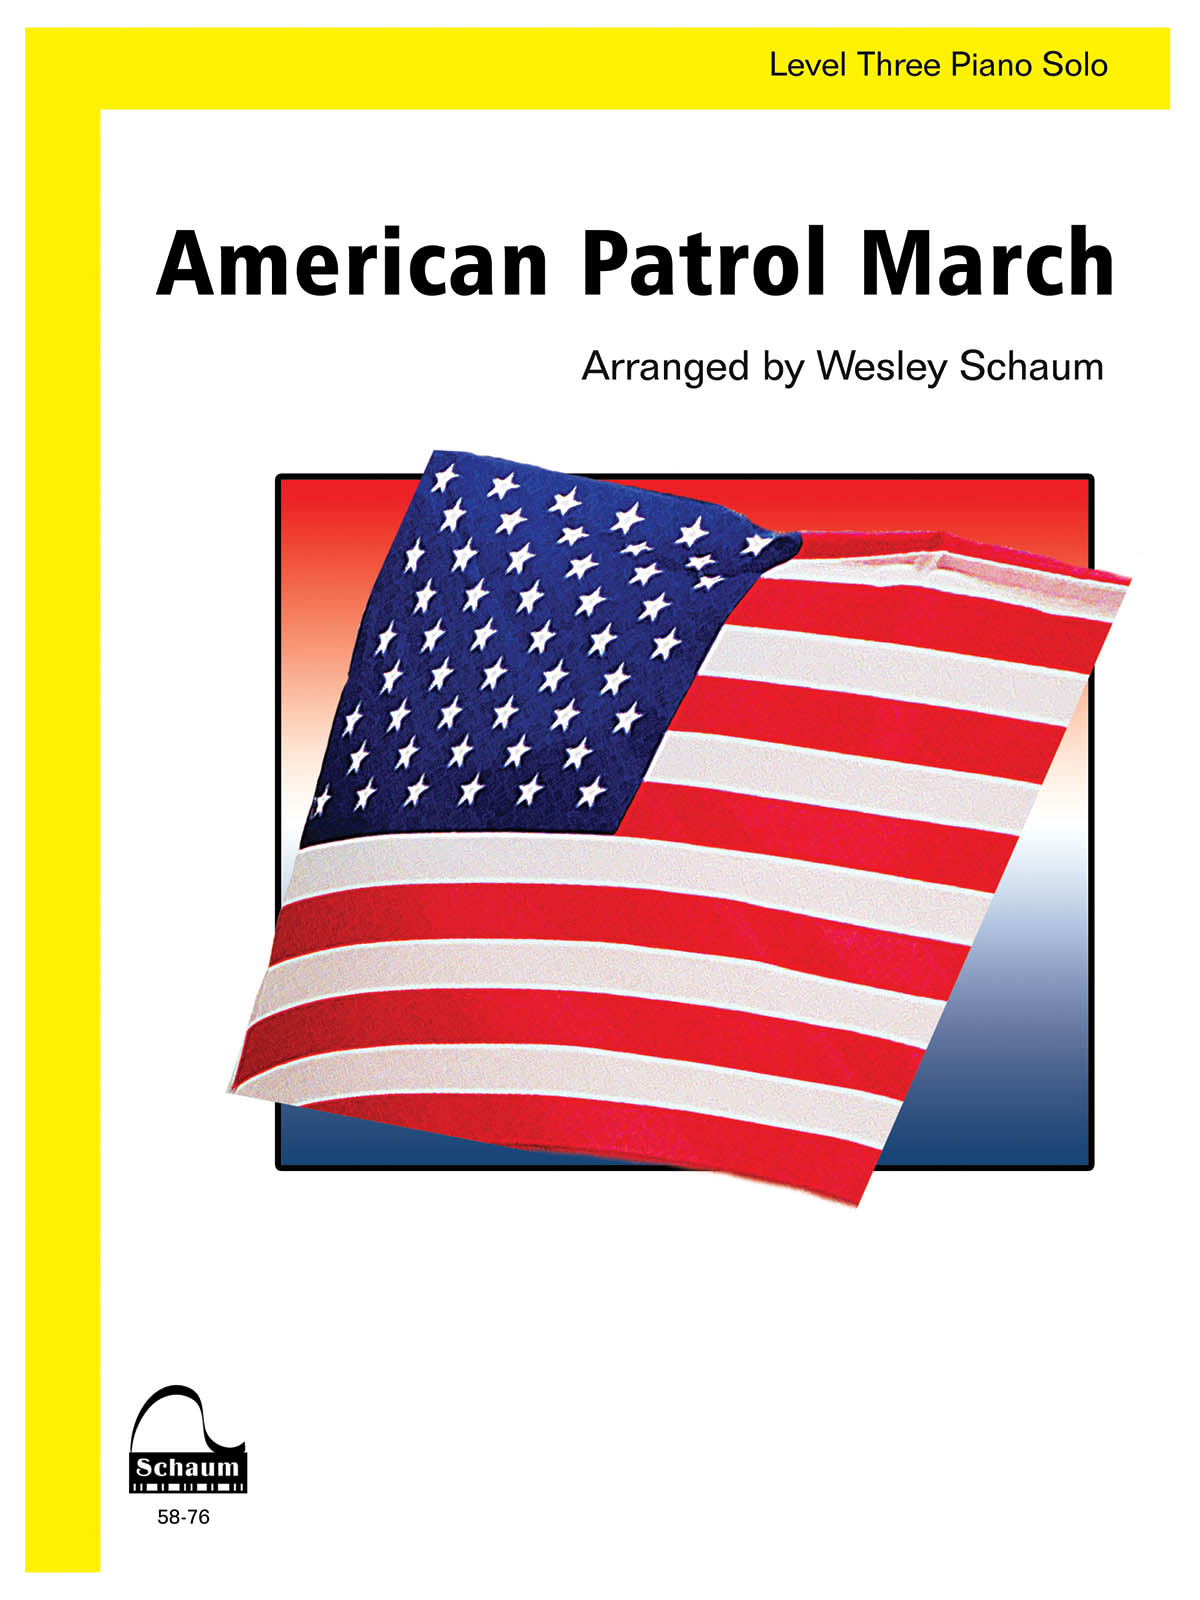 Frank Meacham: American Patrol March